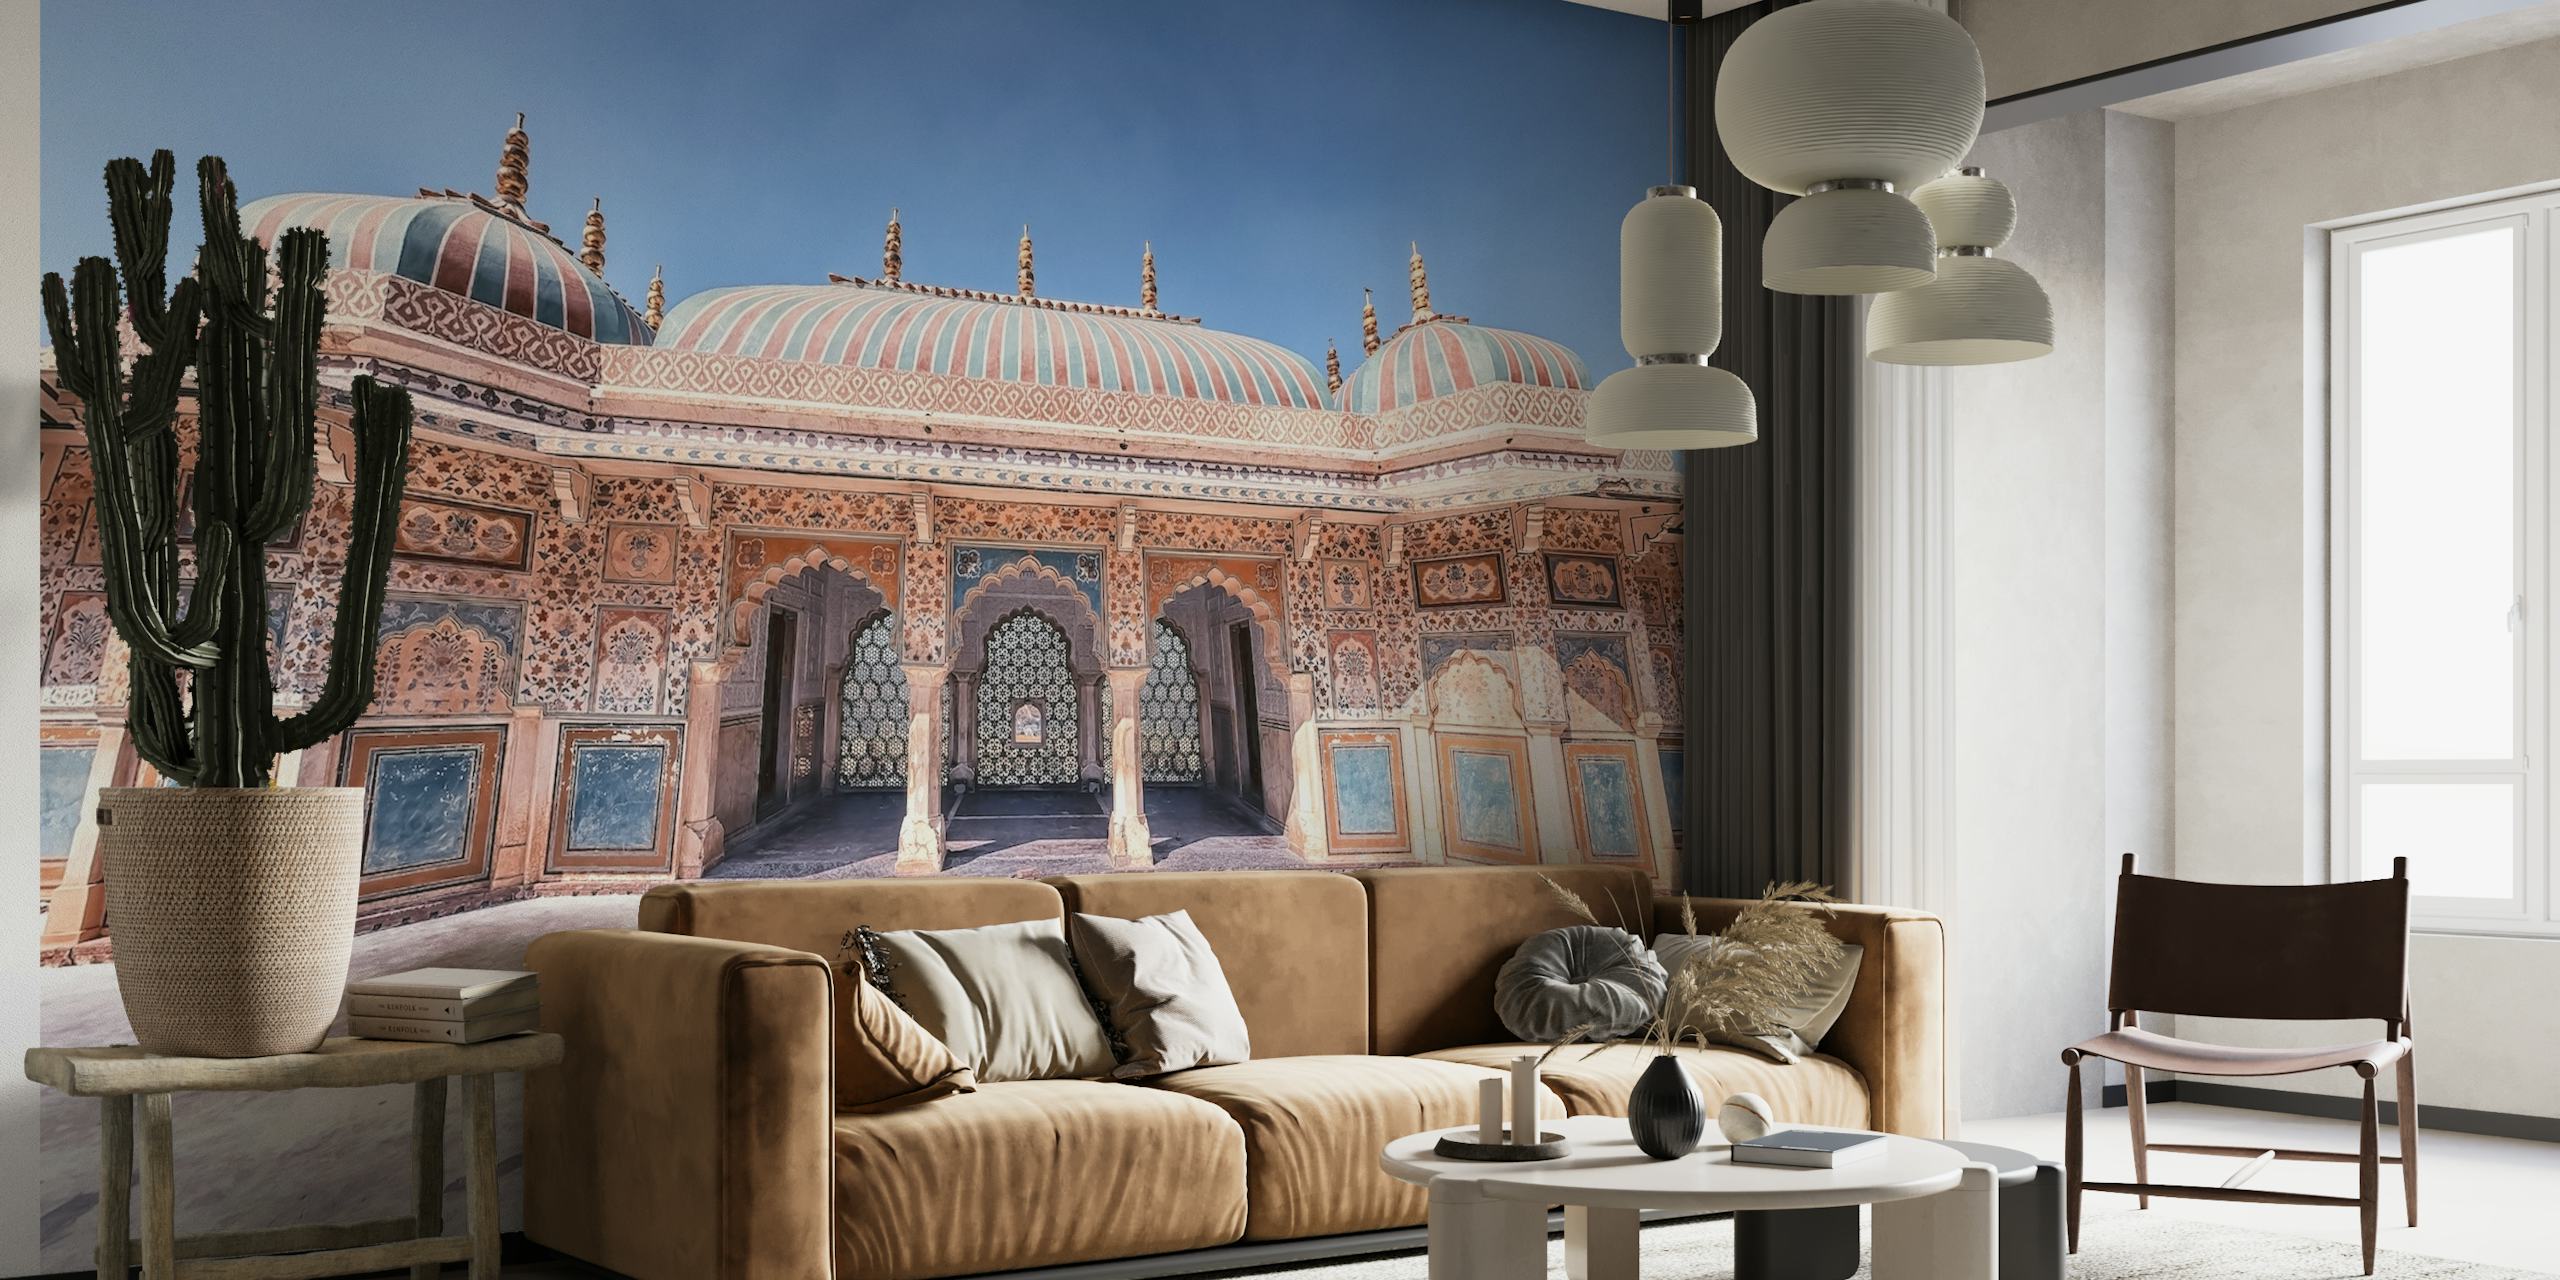 Amber Fort -seinämaalaus, joka kuvaa majesteettista intialaista arkkitehtuuria ja monimutkaisia palatsin yksityiskohtia